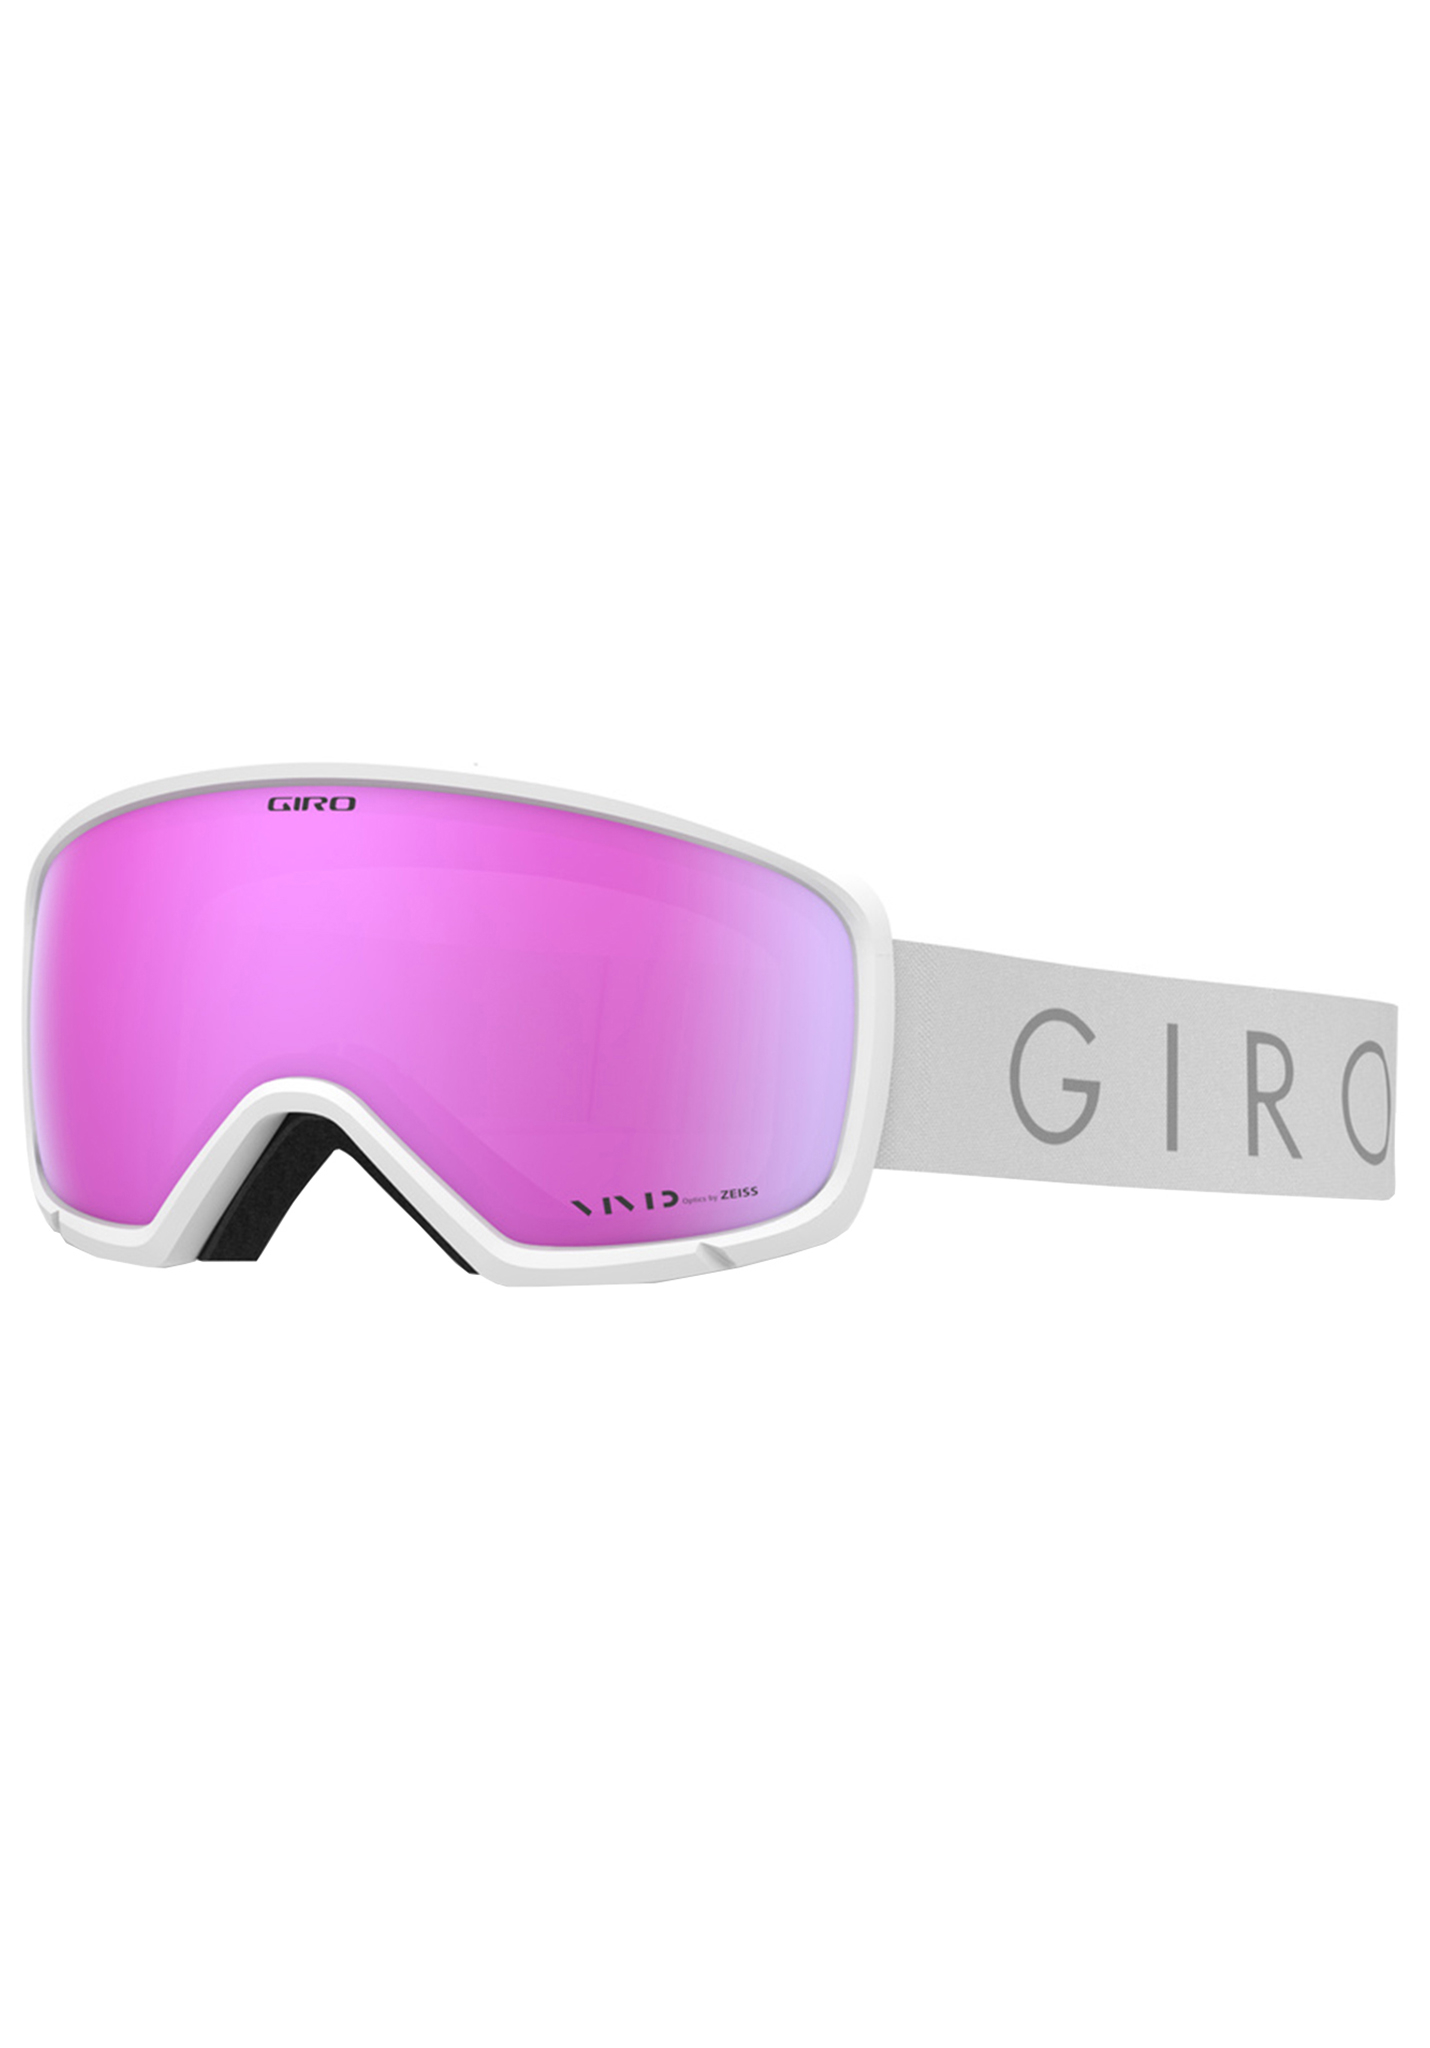 Giro Ringo Snowboardbrillen weißer kern hell/vivid rosa One Size